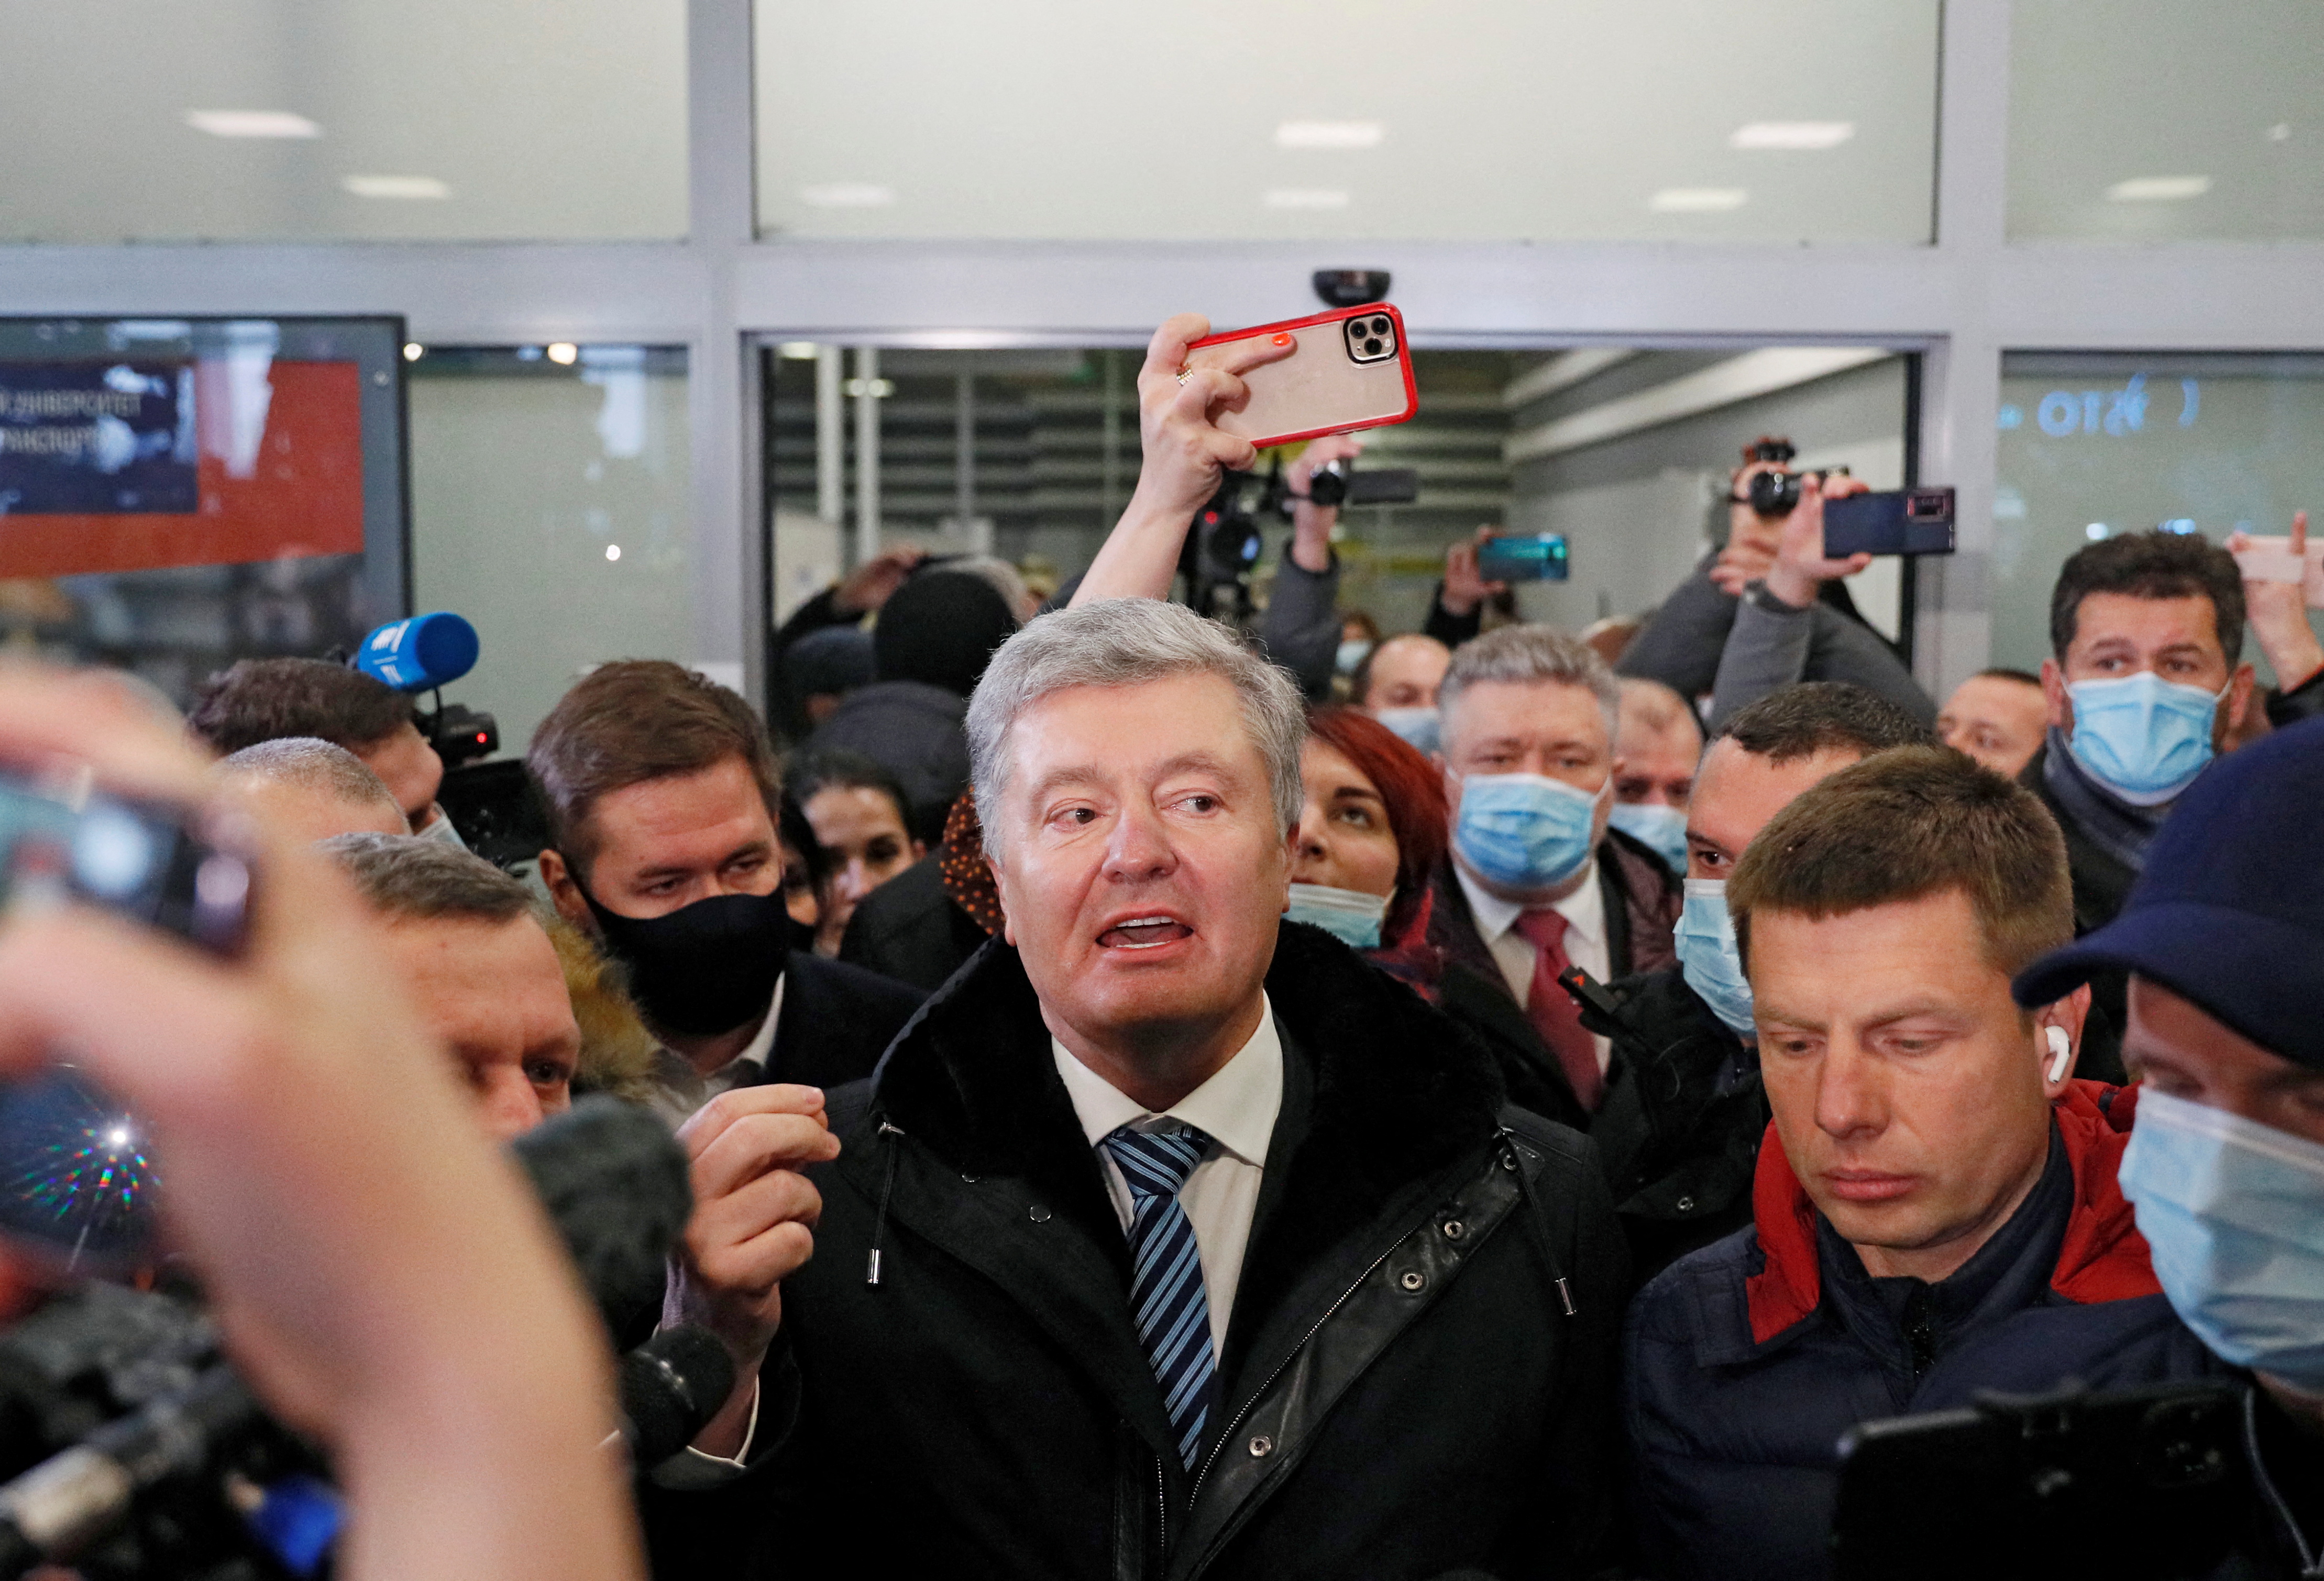 Ο πρώην πρόεδρος της Ουκρανίας Πέτρο Ποροσένκο μιλά σε δημοσιογράφους κατά την άφιξή του στο αεροδρόμιο Zhulyany στο Κίεβο, Ουκρανία, 17 Ιανουαρίου 2022. REUTERS/Gleb Garanich